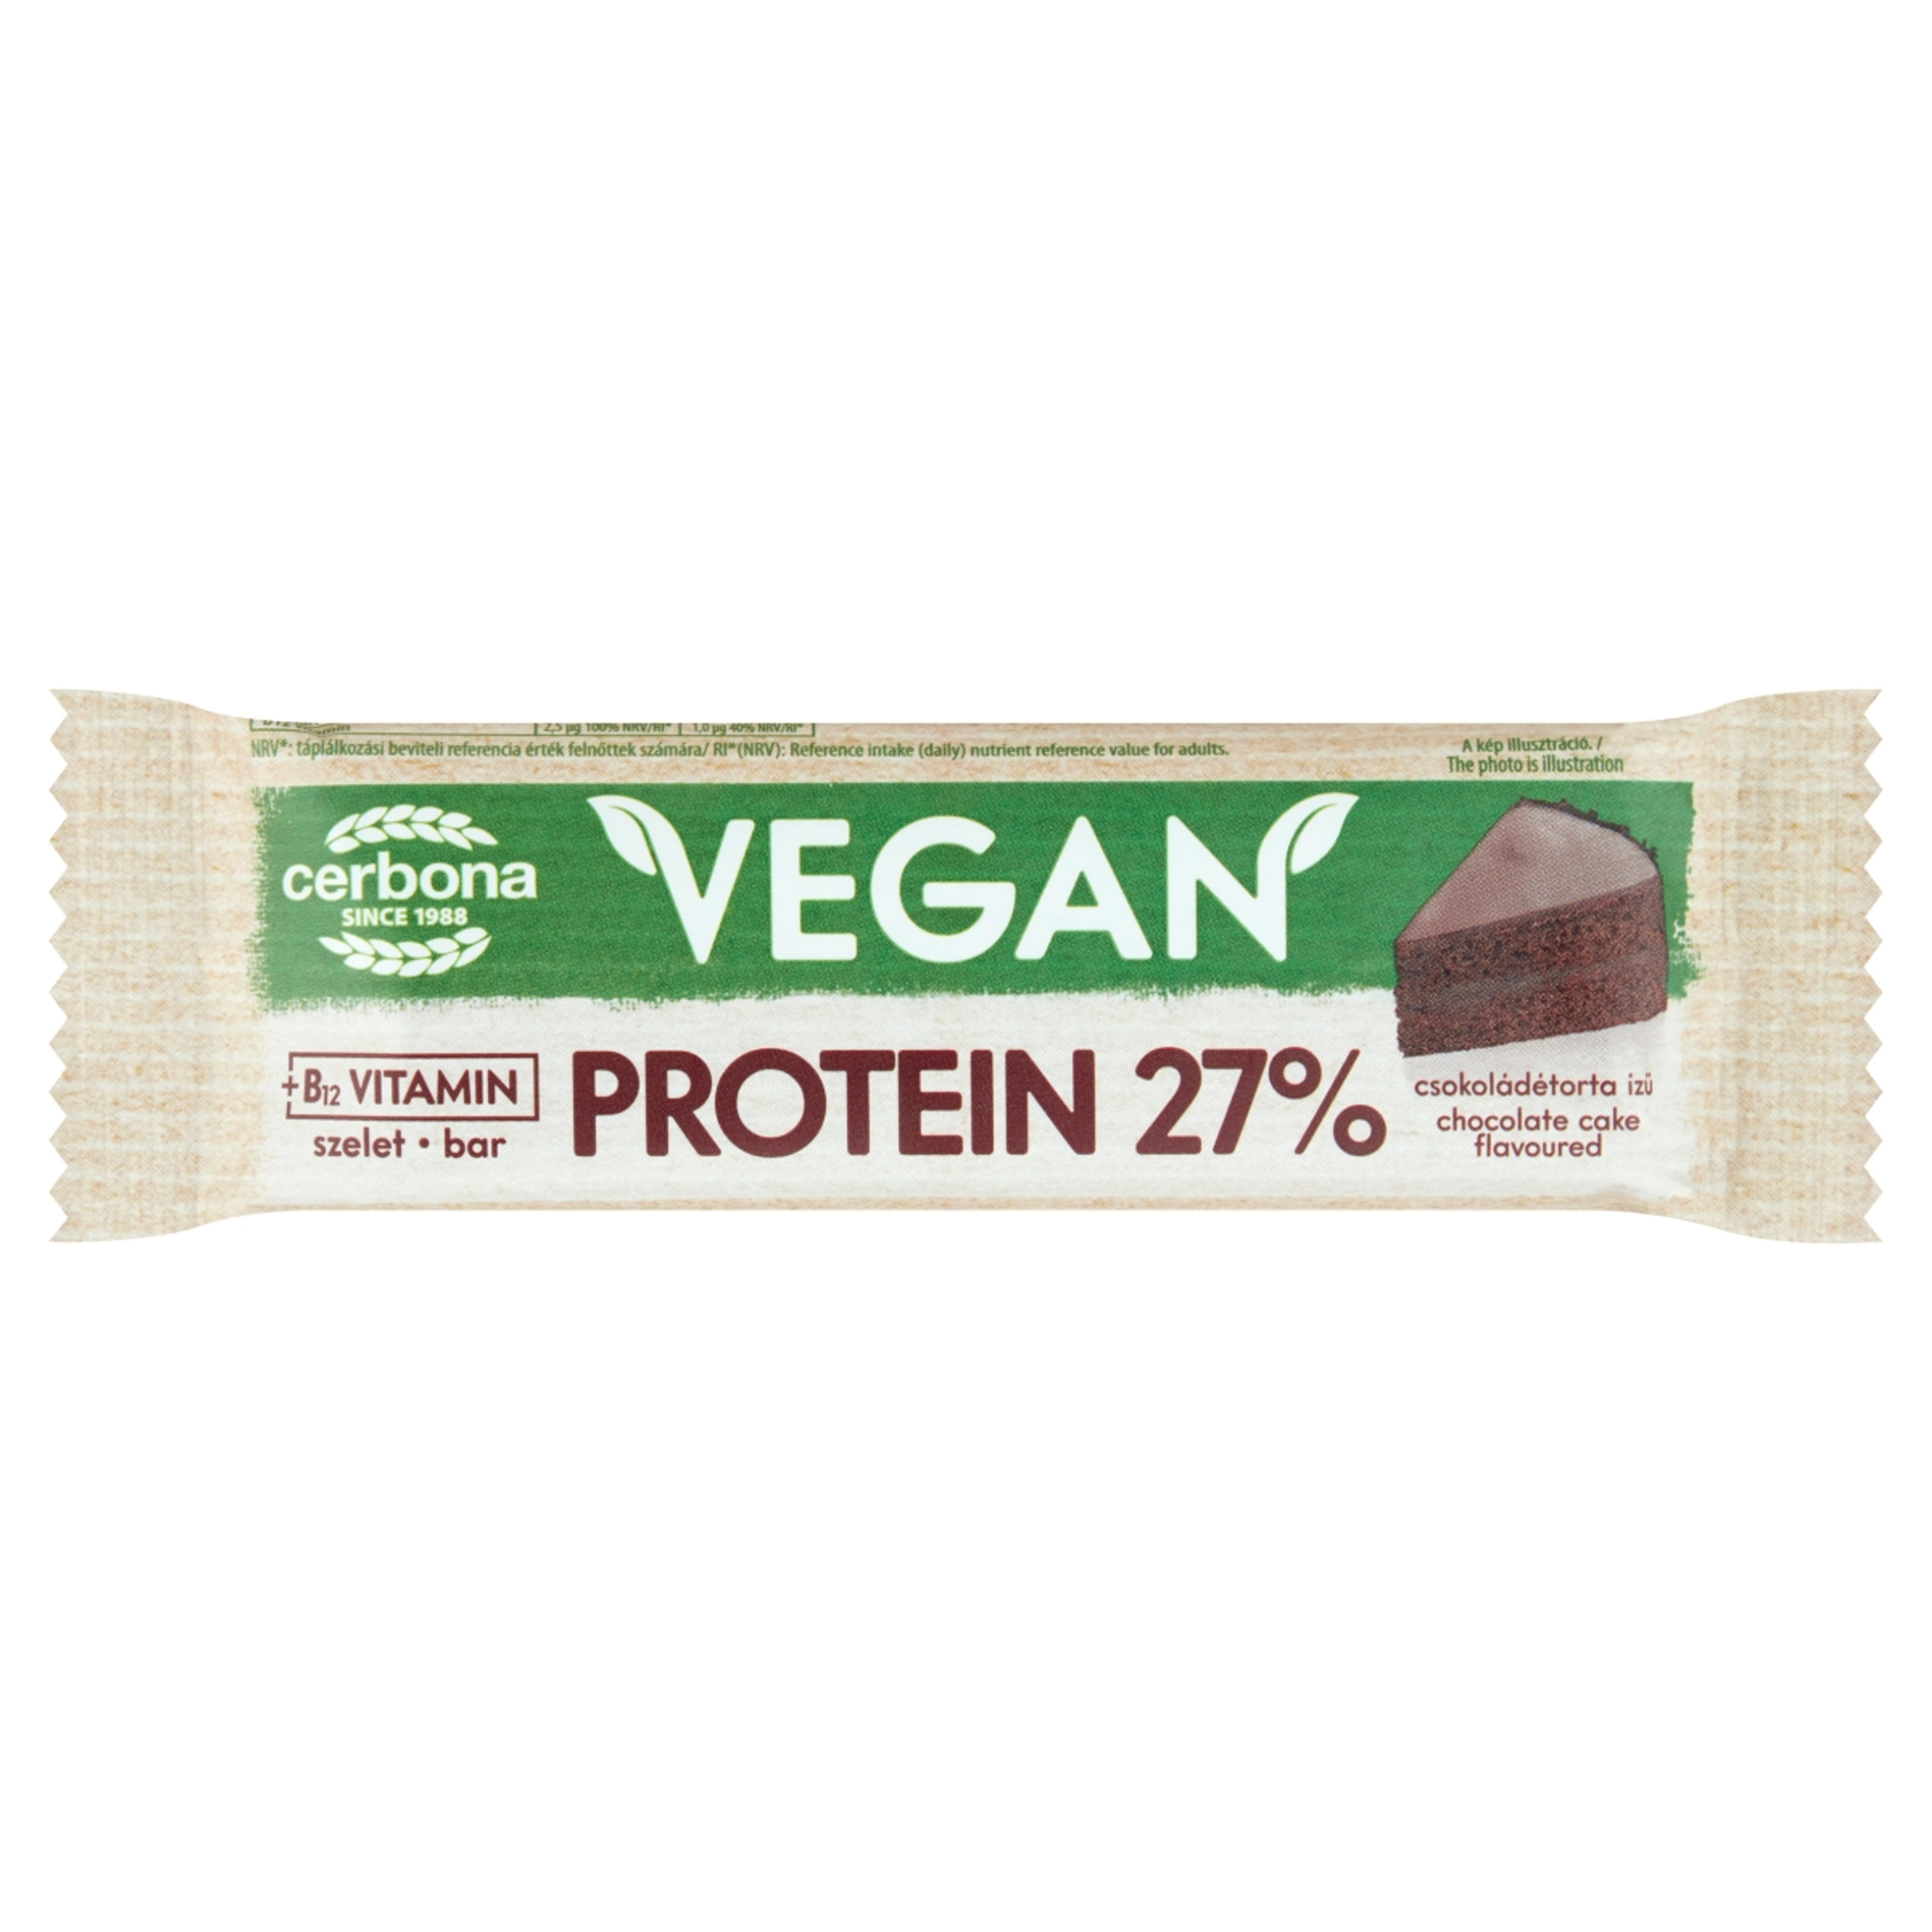 Cerbona Vegan magas fehérjetartalmú csokoládétorta ízű szelet kakaós bevonattal - 40 g